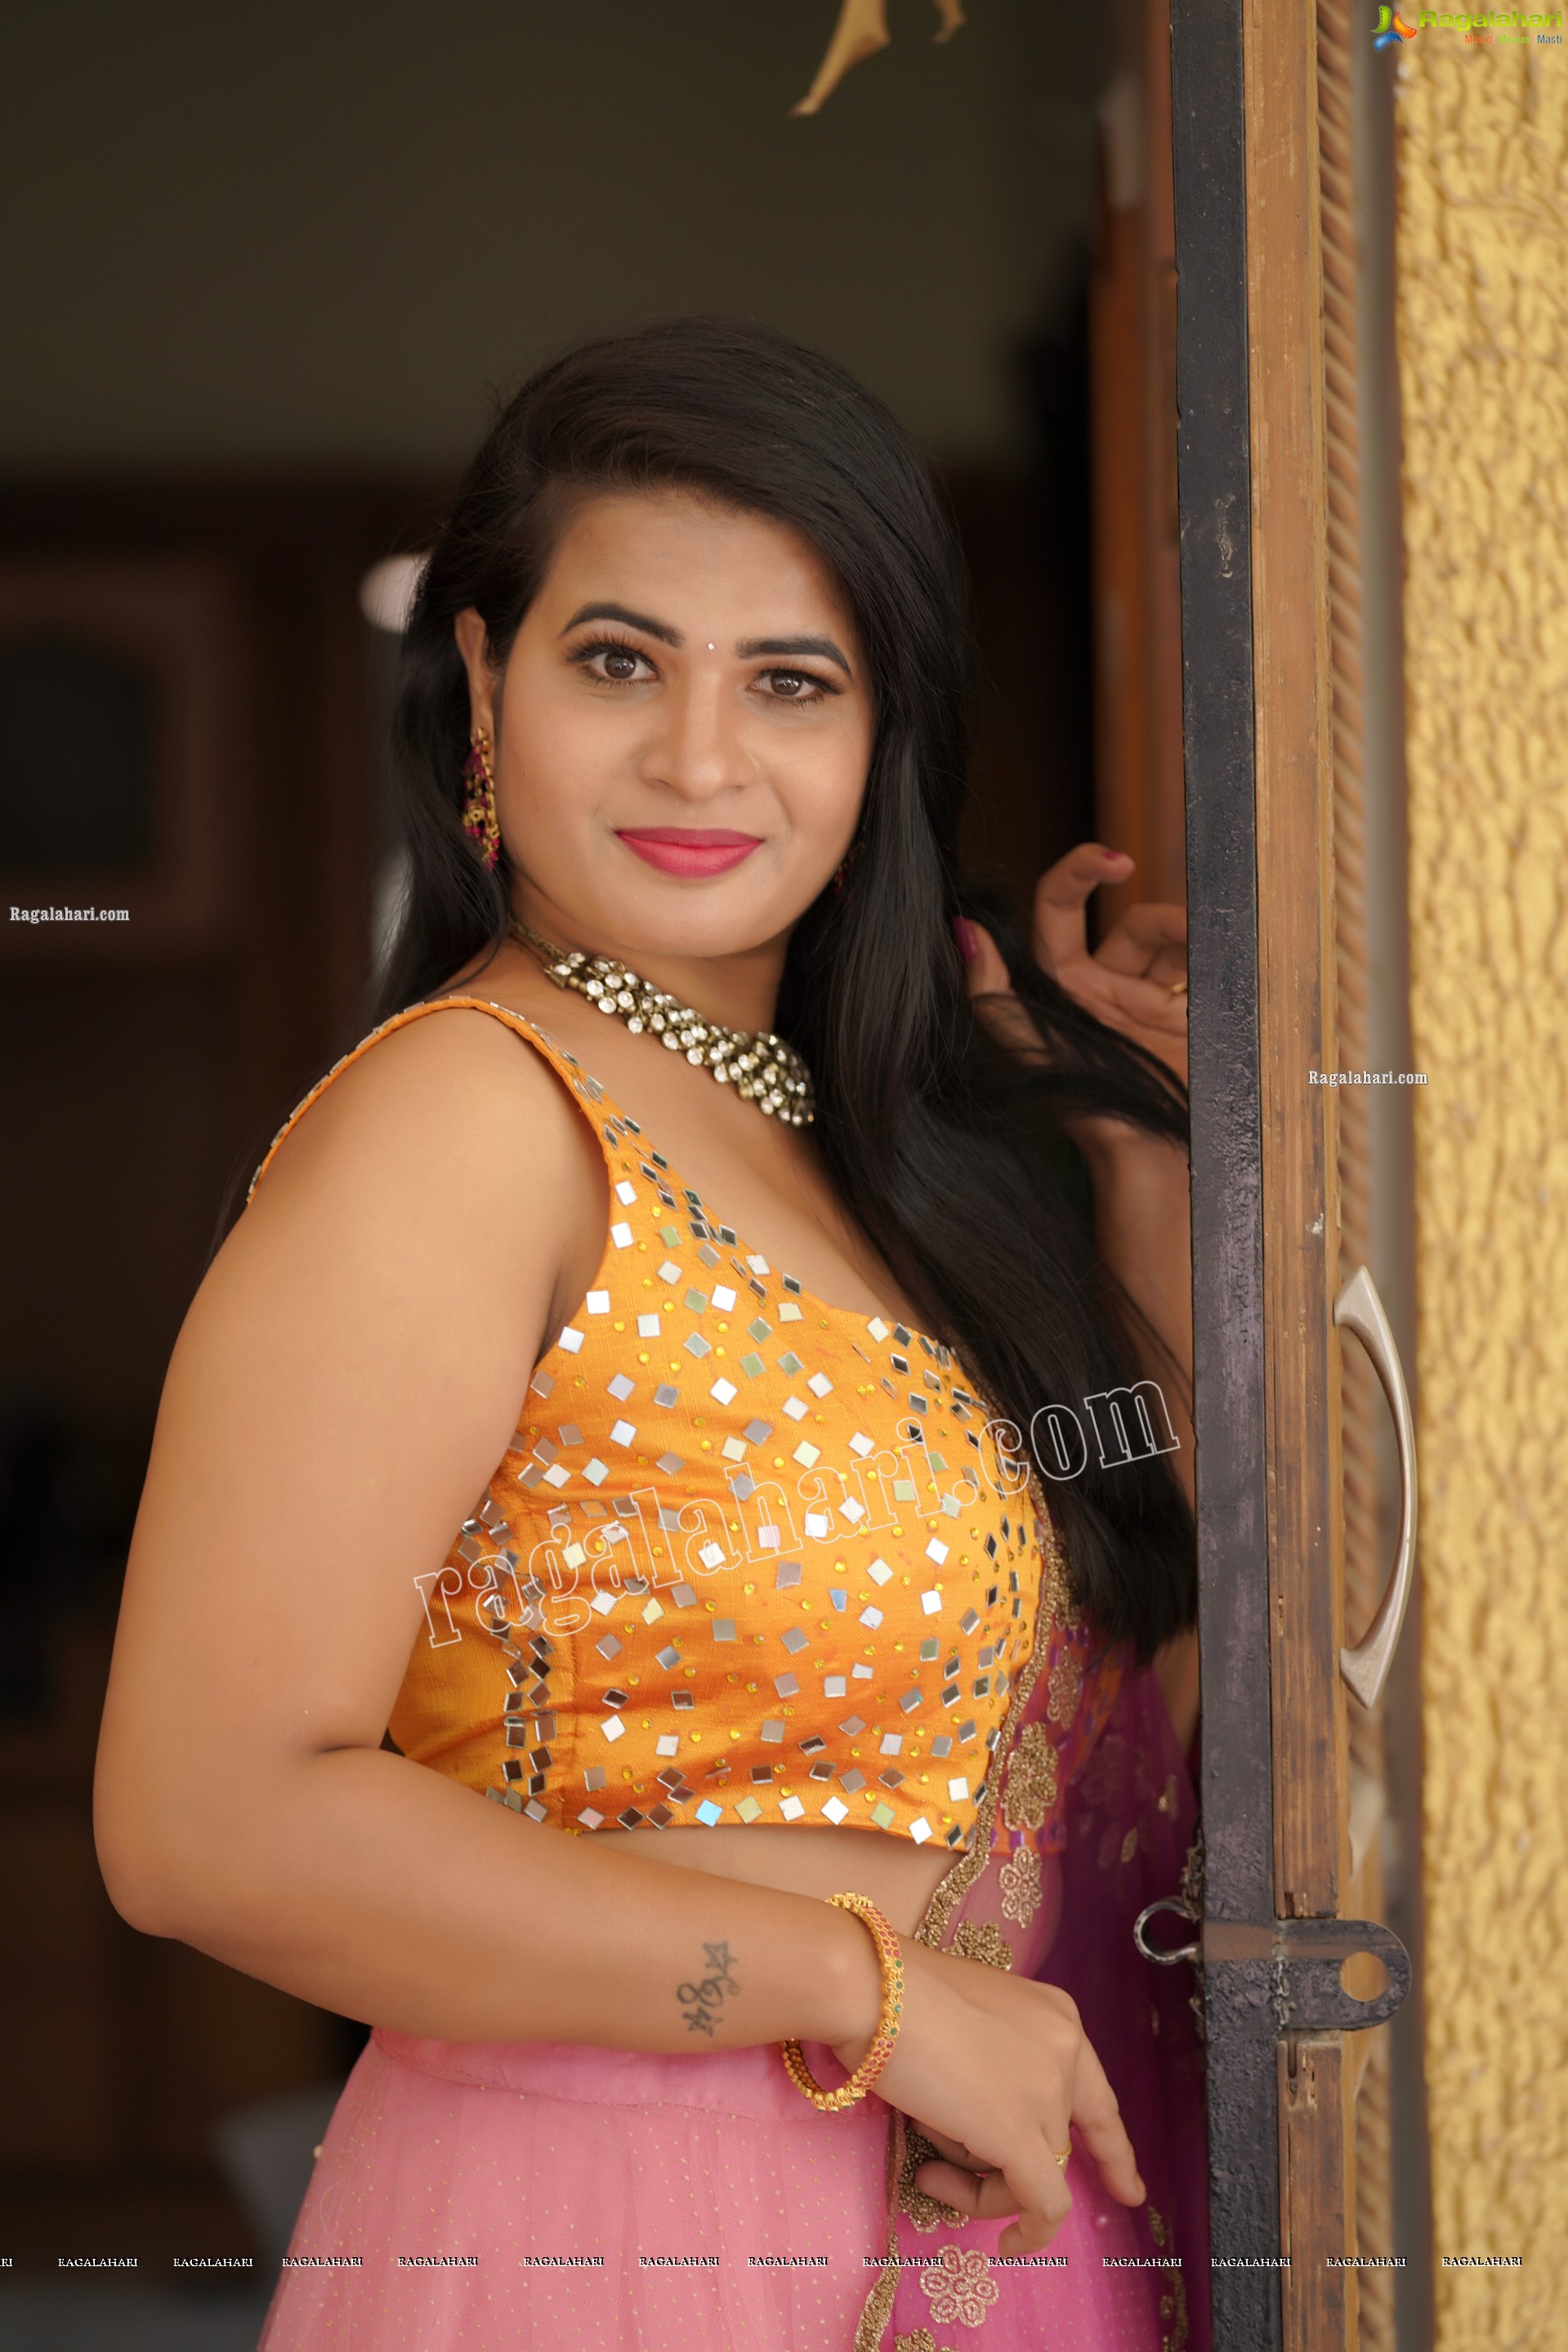 Anusha Venugopal in Pink and Yellow Embellished Lehenga Choli, Exclusive Photoshoot